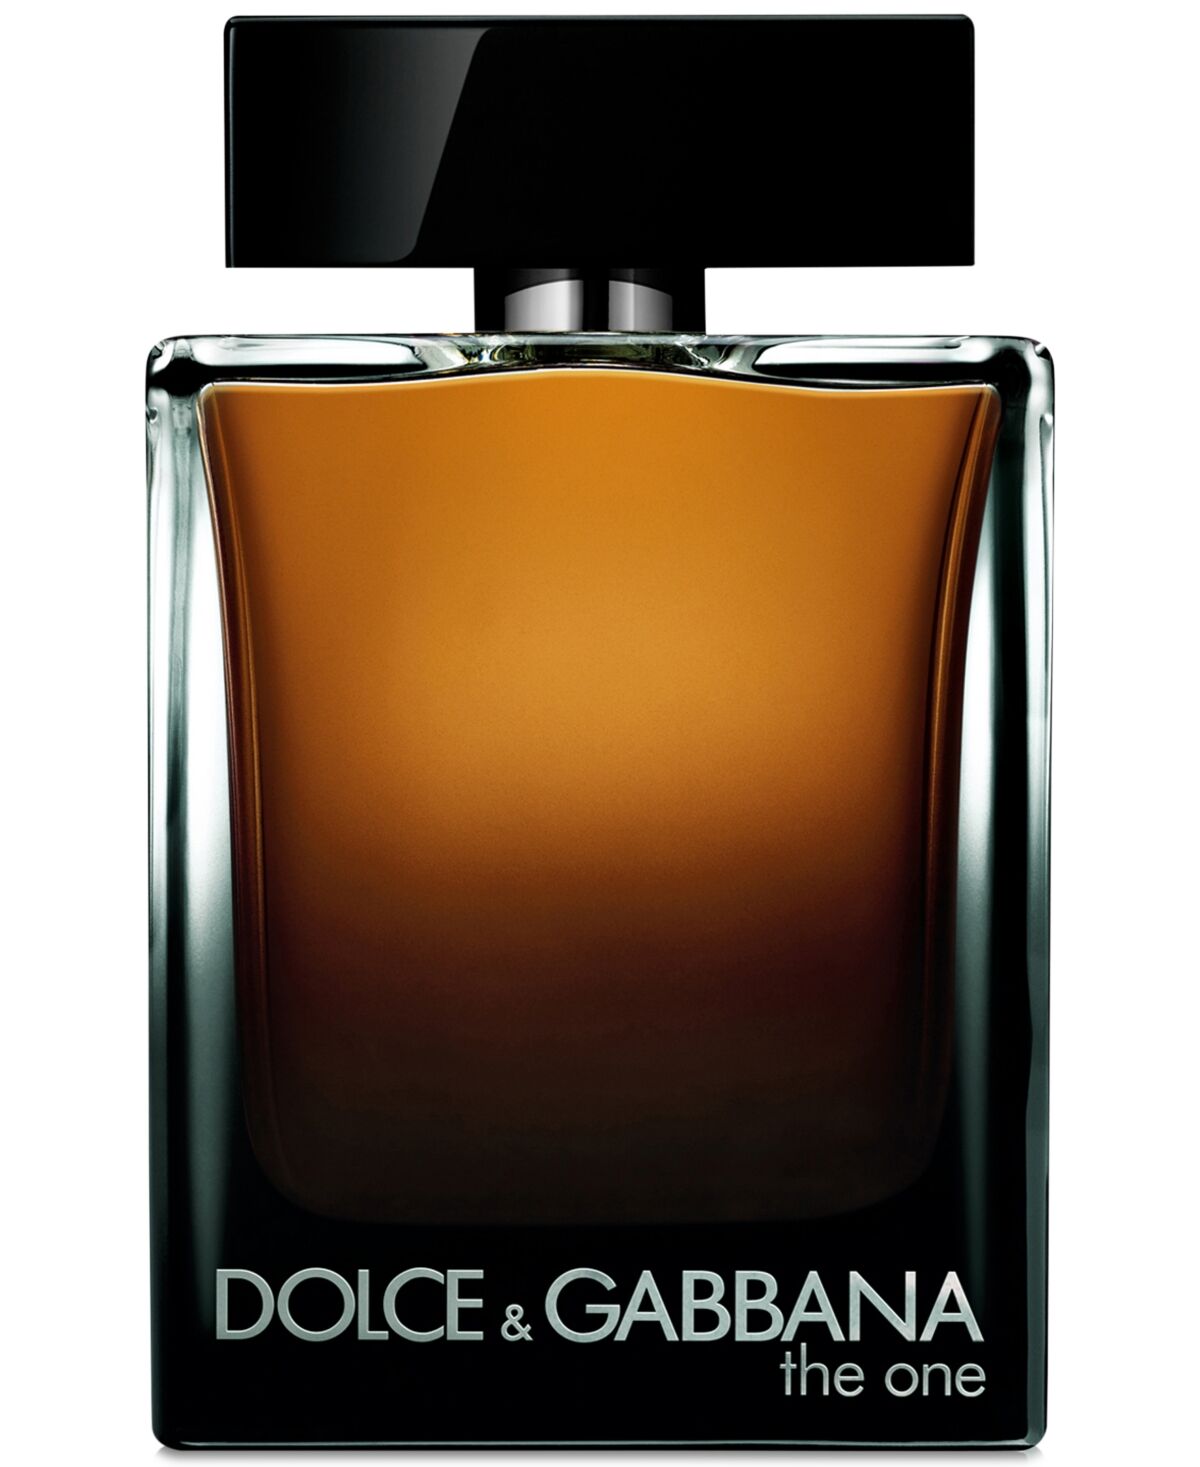 Dolce & Gabbana Men's The One for Men Eau de Parfum Spray, 5 oz.